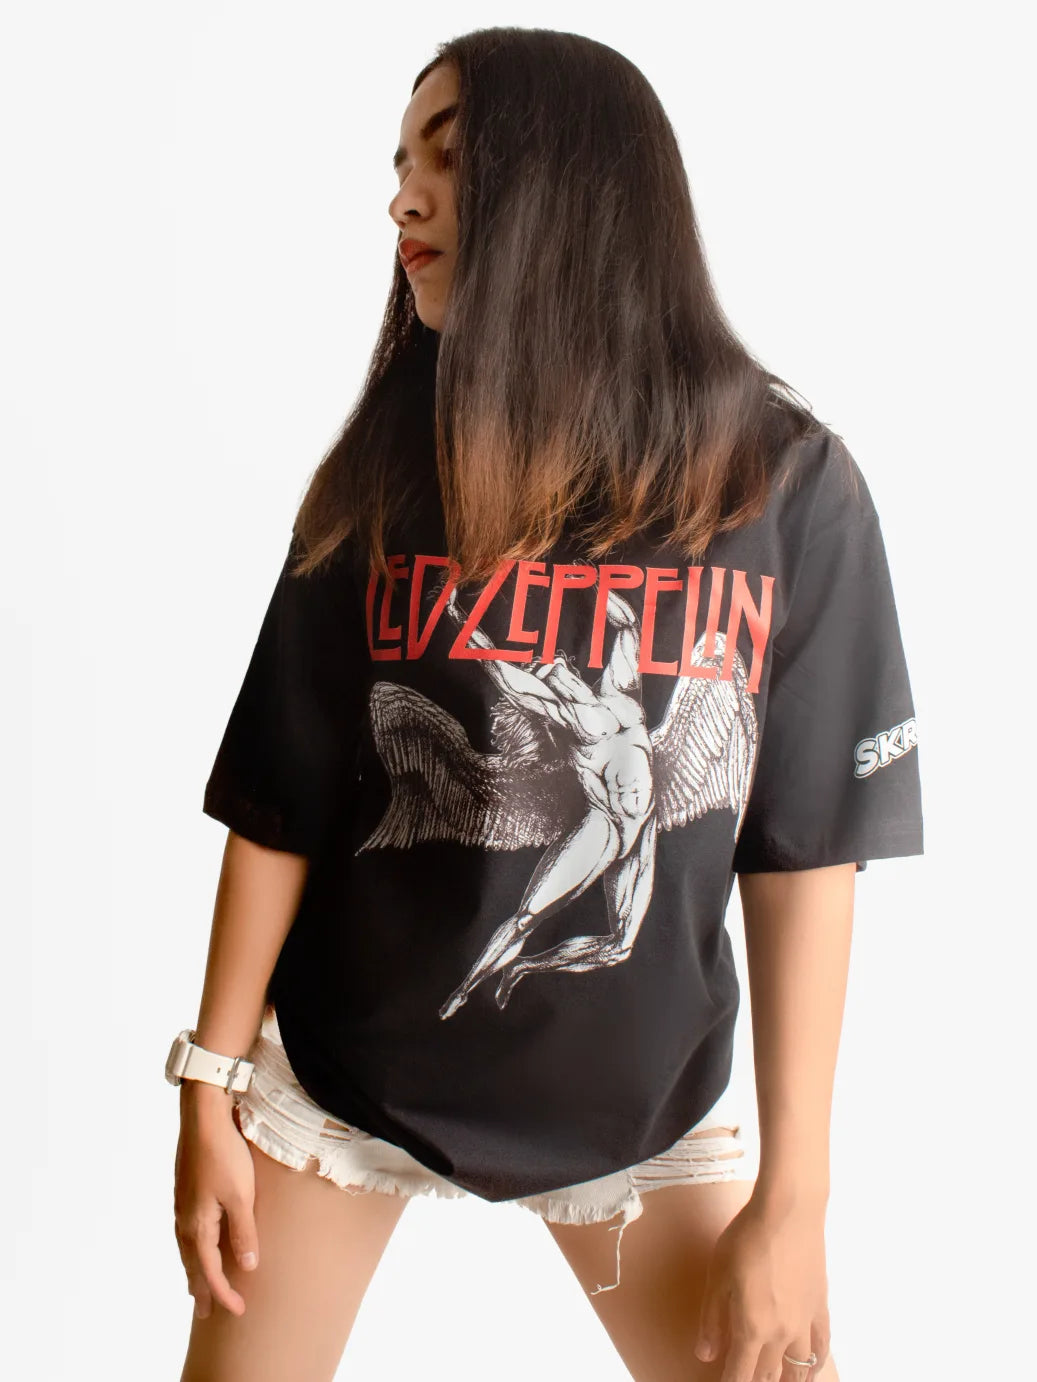 Led Zeppelin Oversized T-shirt for Women